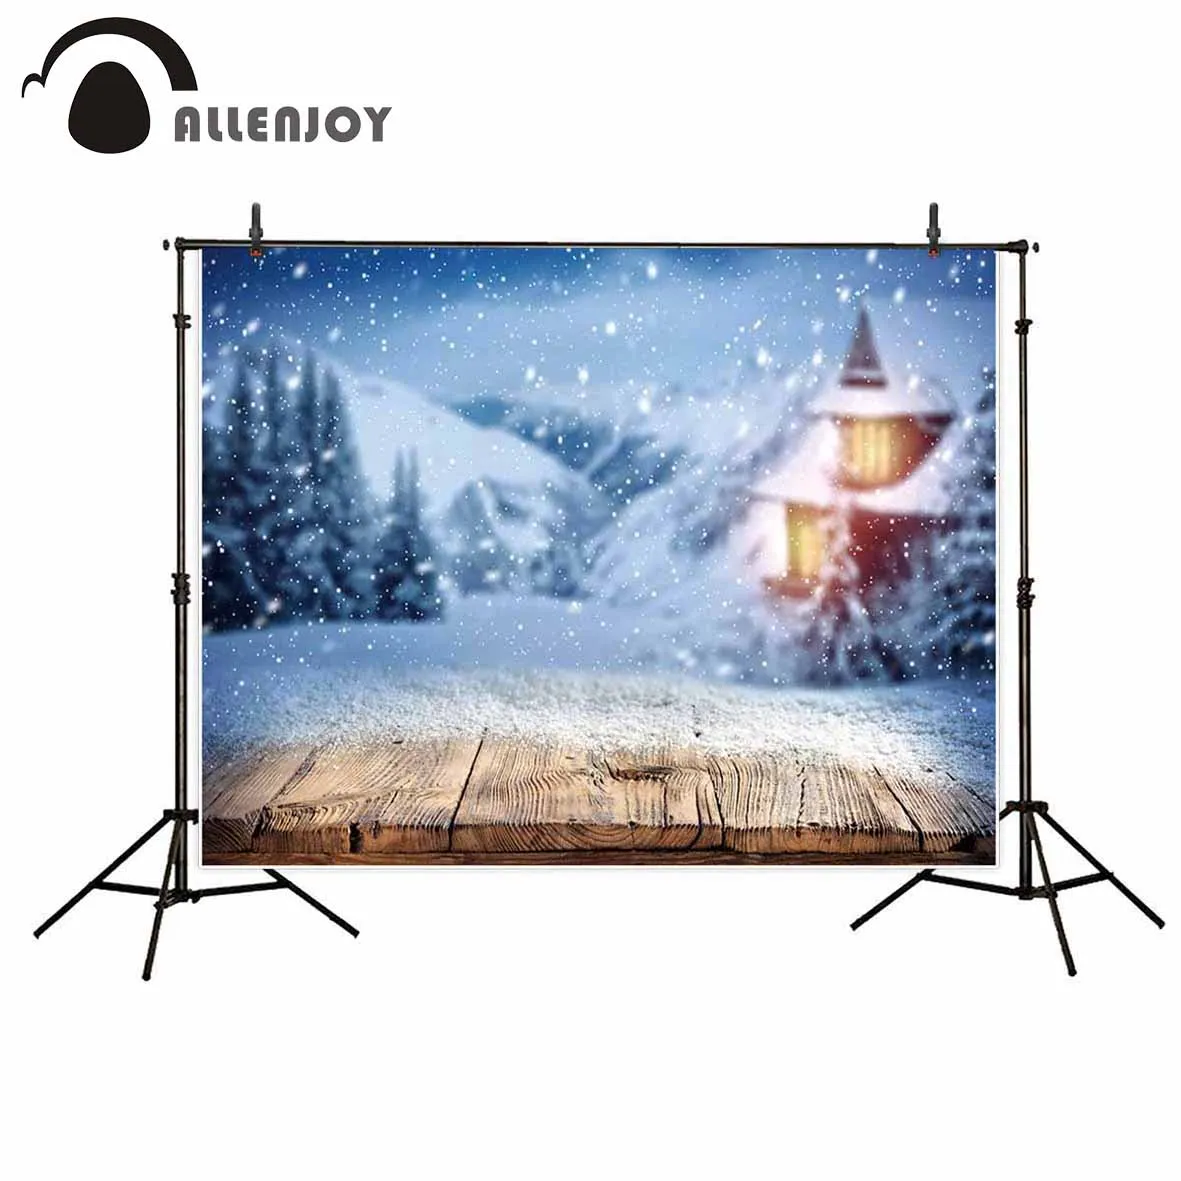 Allenjoy фон для профессиональной фотосъемки с изображением зимнего украшения и снежного пейзажа с деревянной доской теплого дома